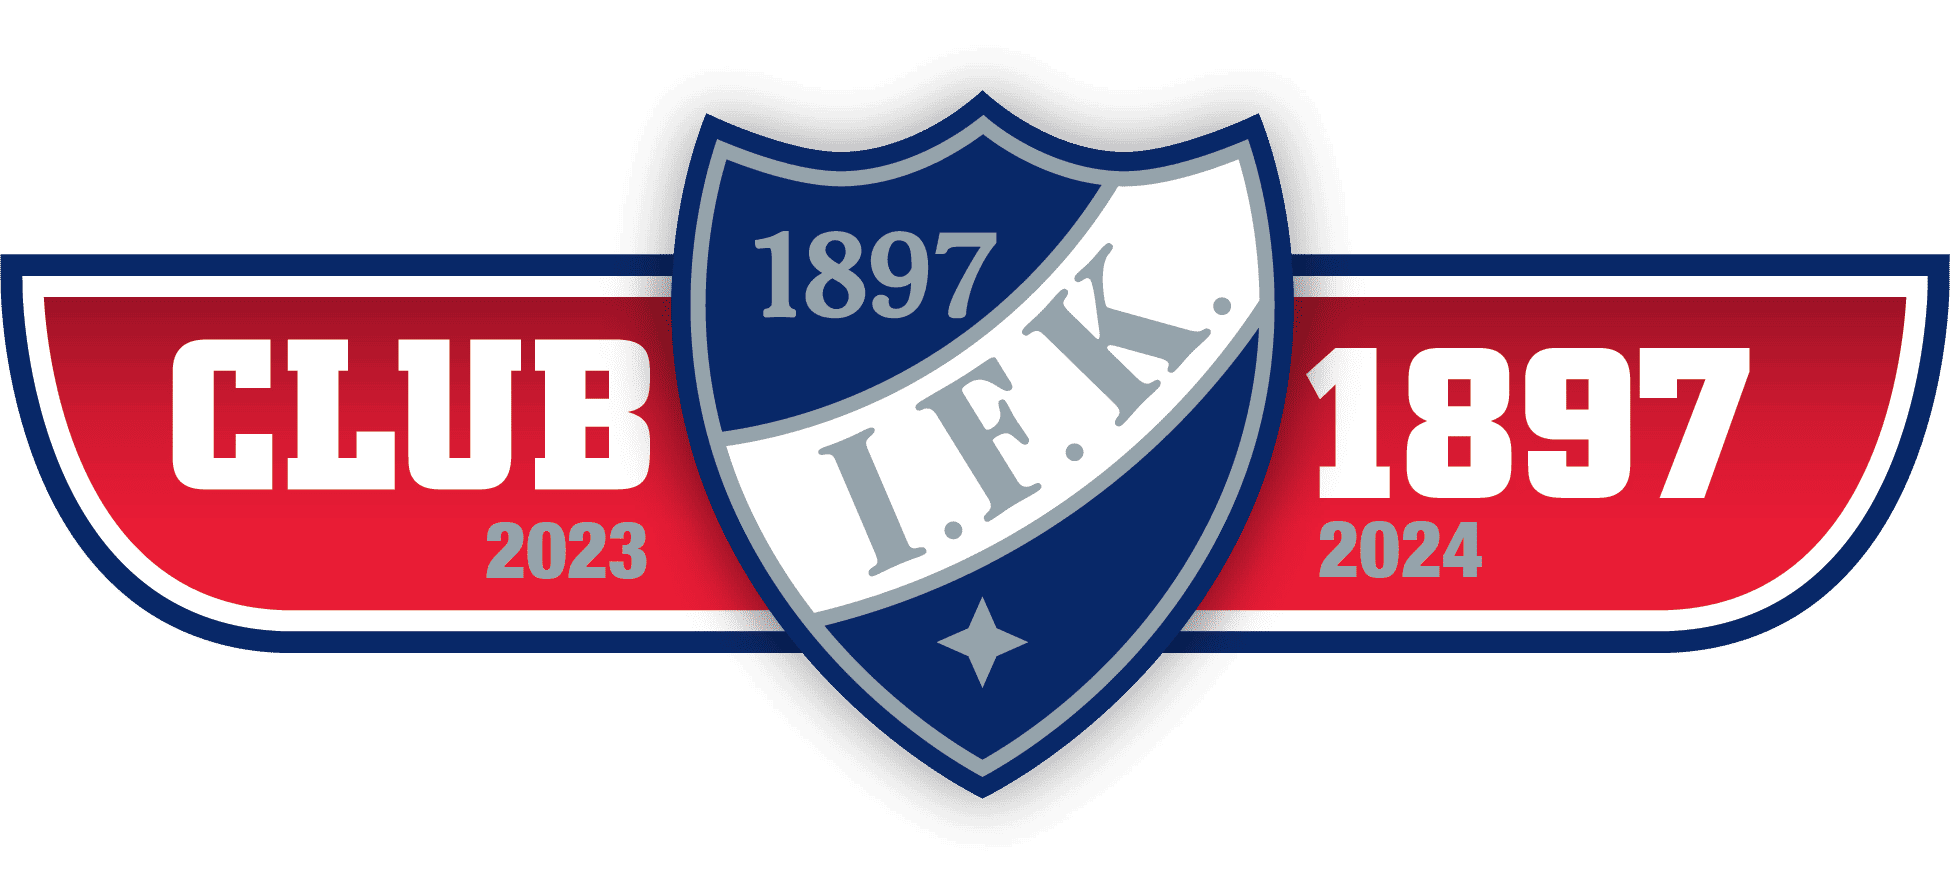 HIFK_Club1897_cmyk_2023-2024